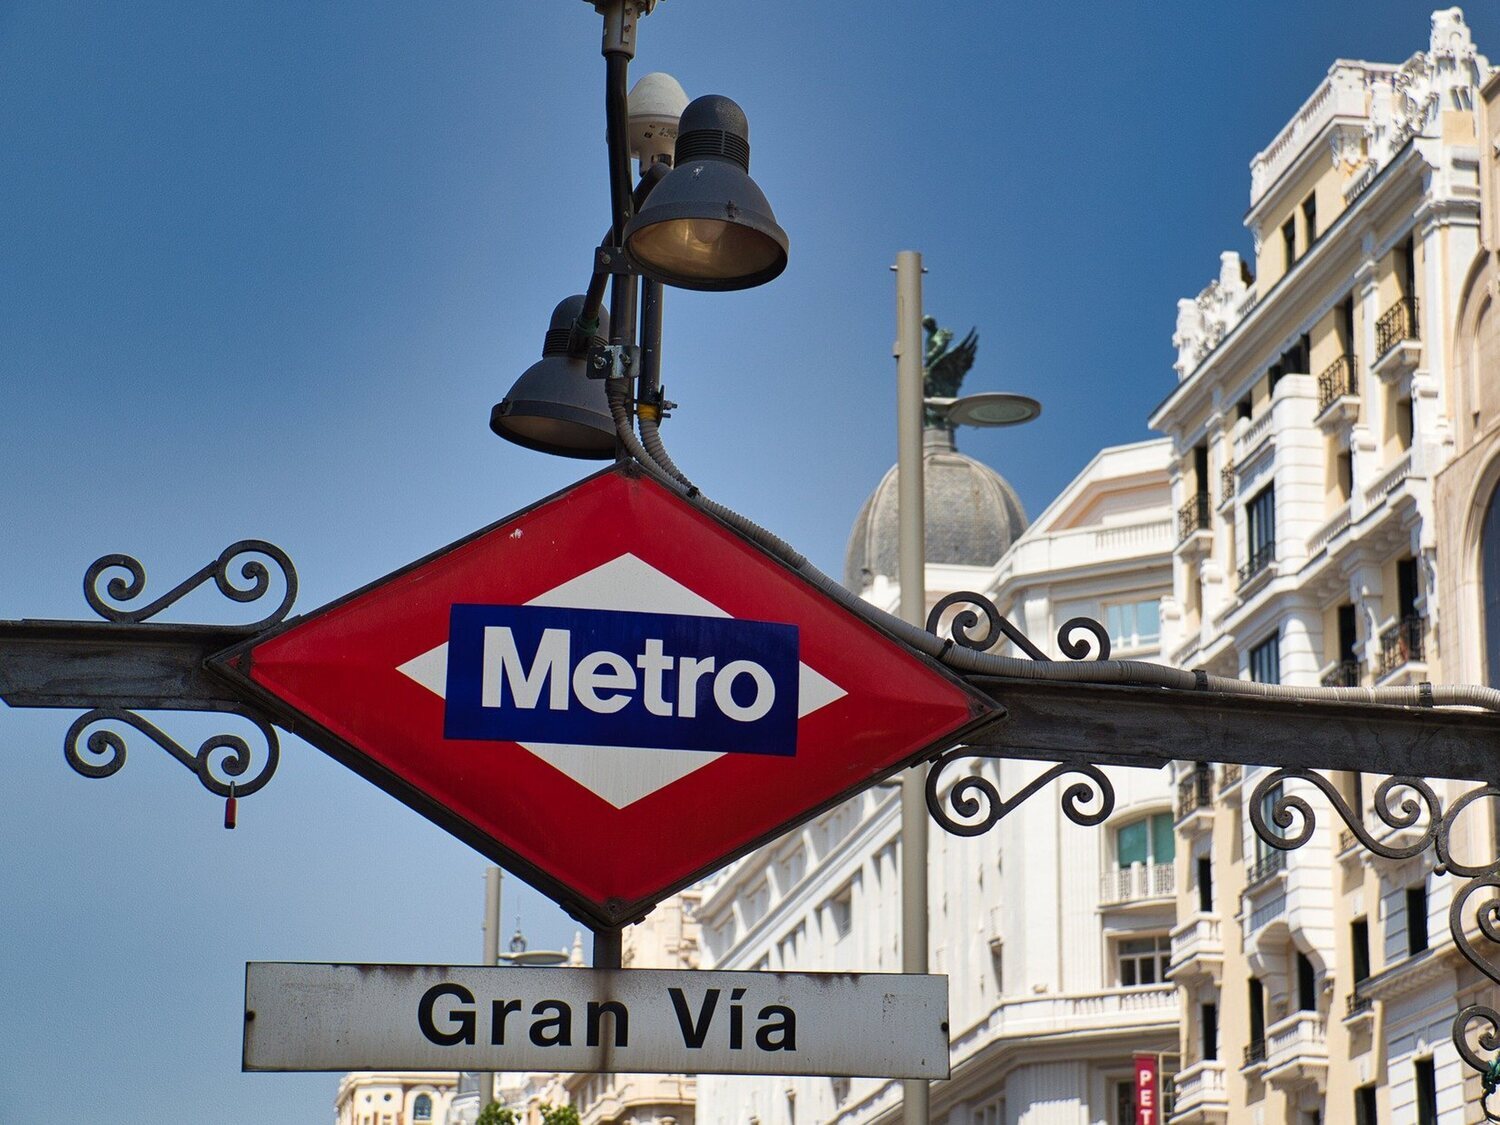 La estación de Metro de Gran Vía de Madrid ha tenido tres nombres: los motivos